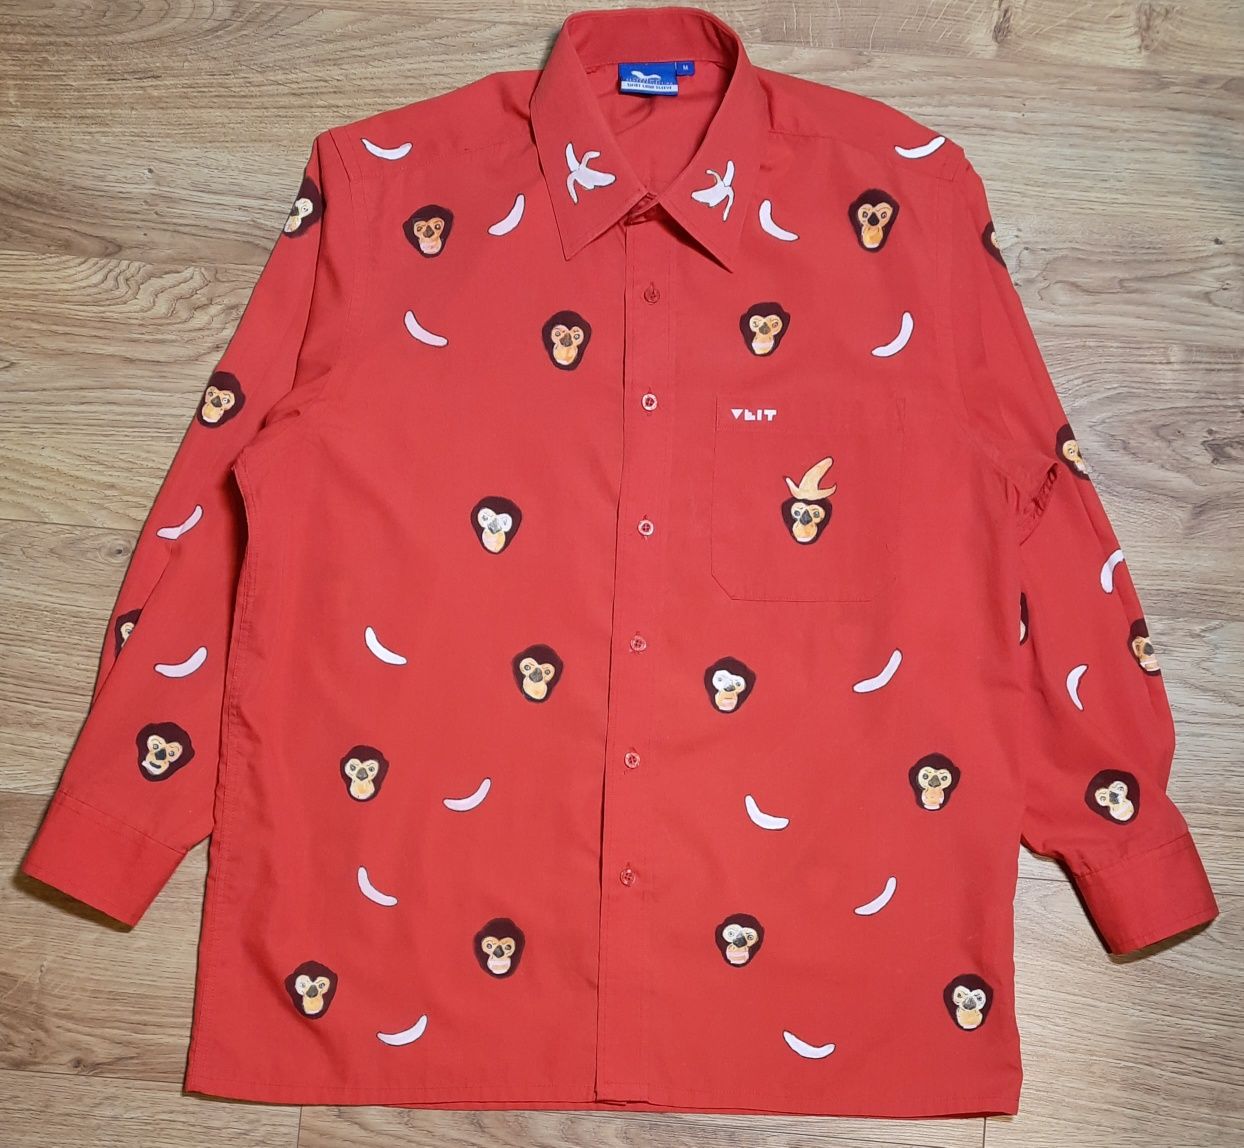 Koszula Adler Czerwona w Małpy i Banany M